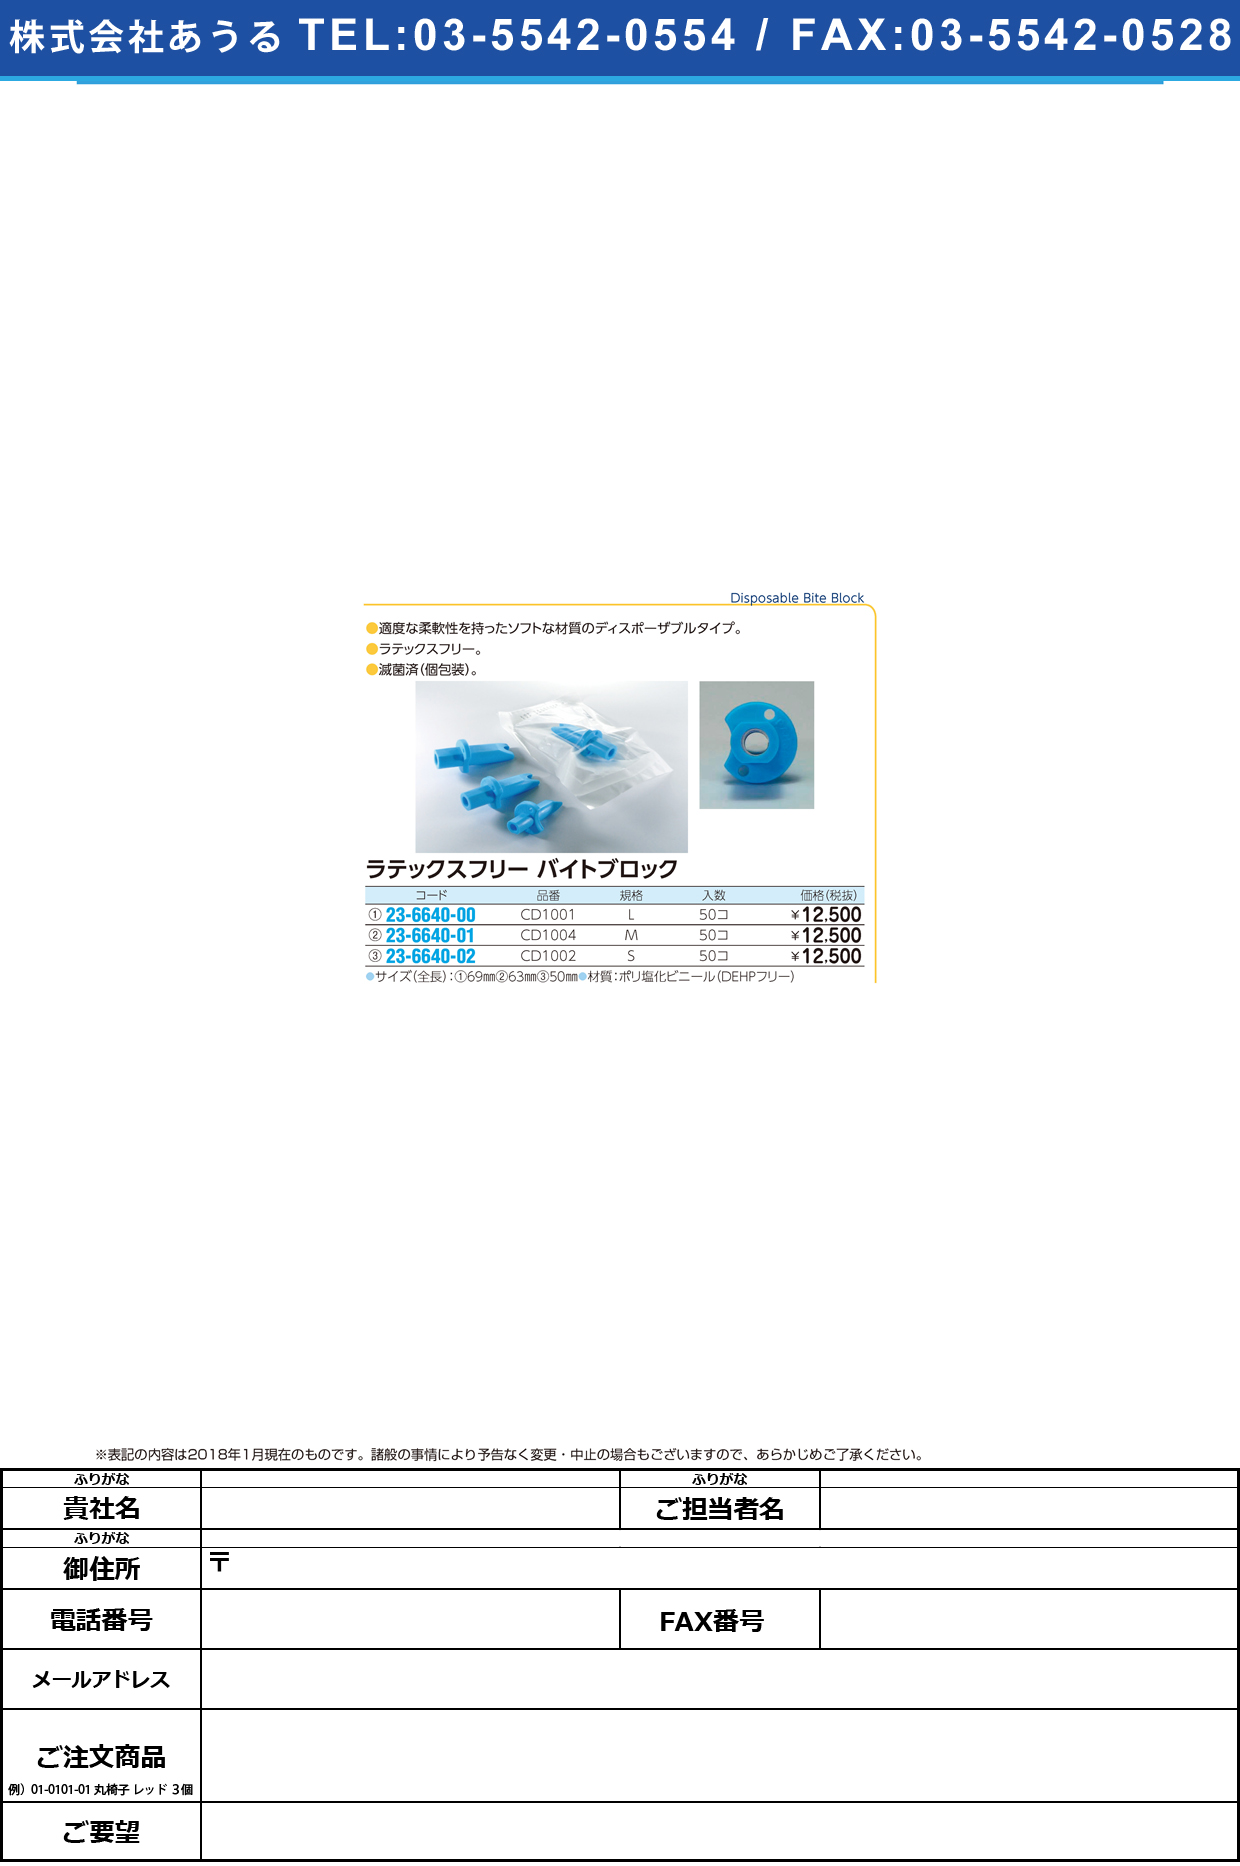 (23-6640-01)ラテックスフリーバイトブロック CD1004(M)50ｺｲﾘ ﾗﾃｯｸｽﾌﾘｰﾊﾞｲﾄﾌﾞﾛｯｸ【1袋単位】【2018年カタログ商品】